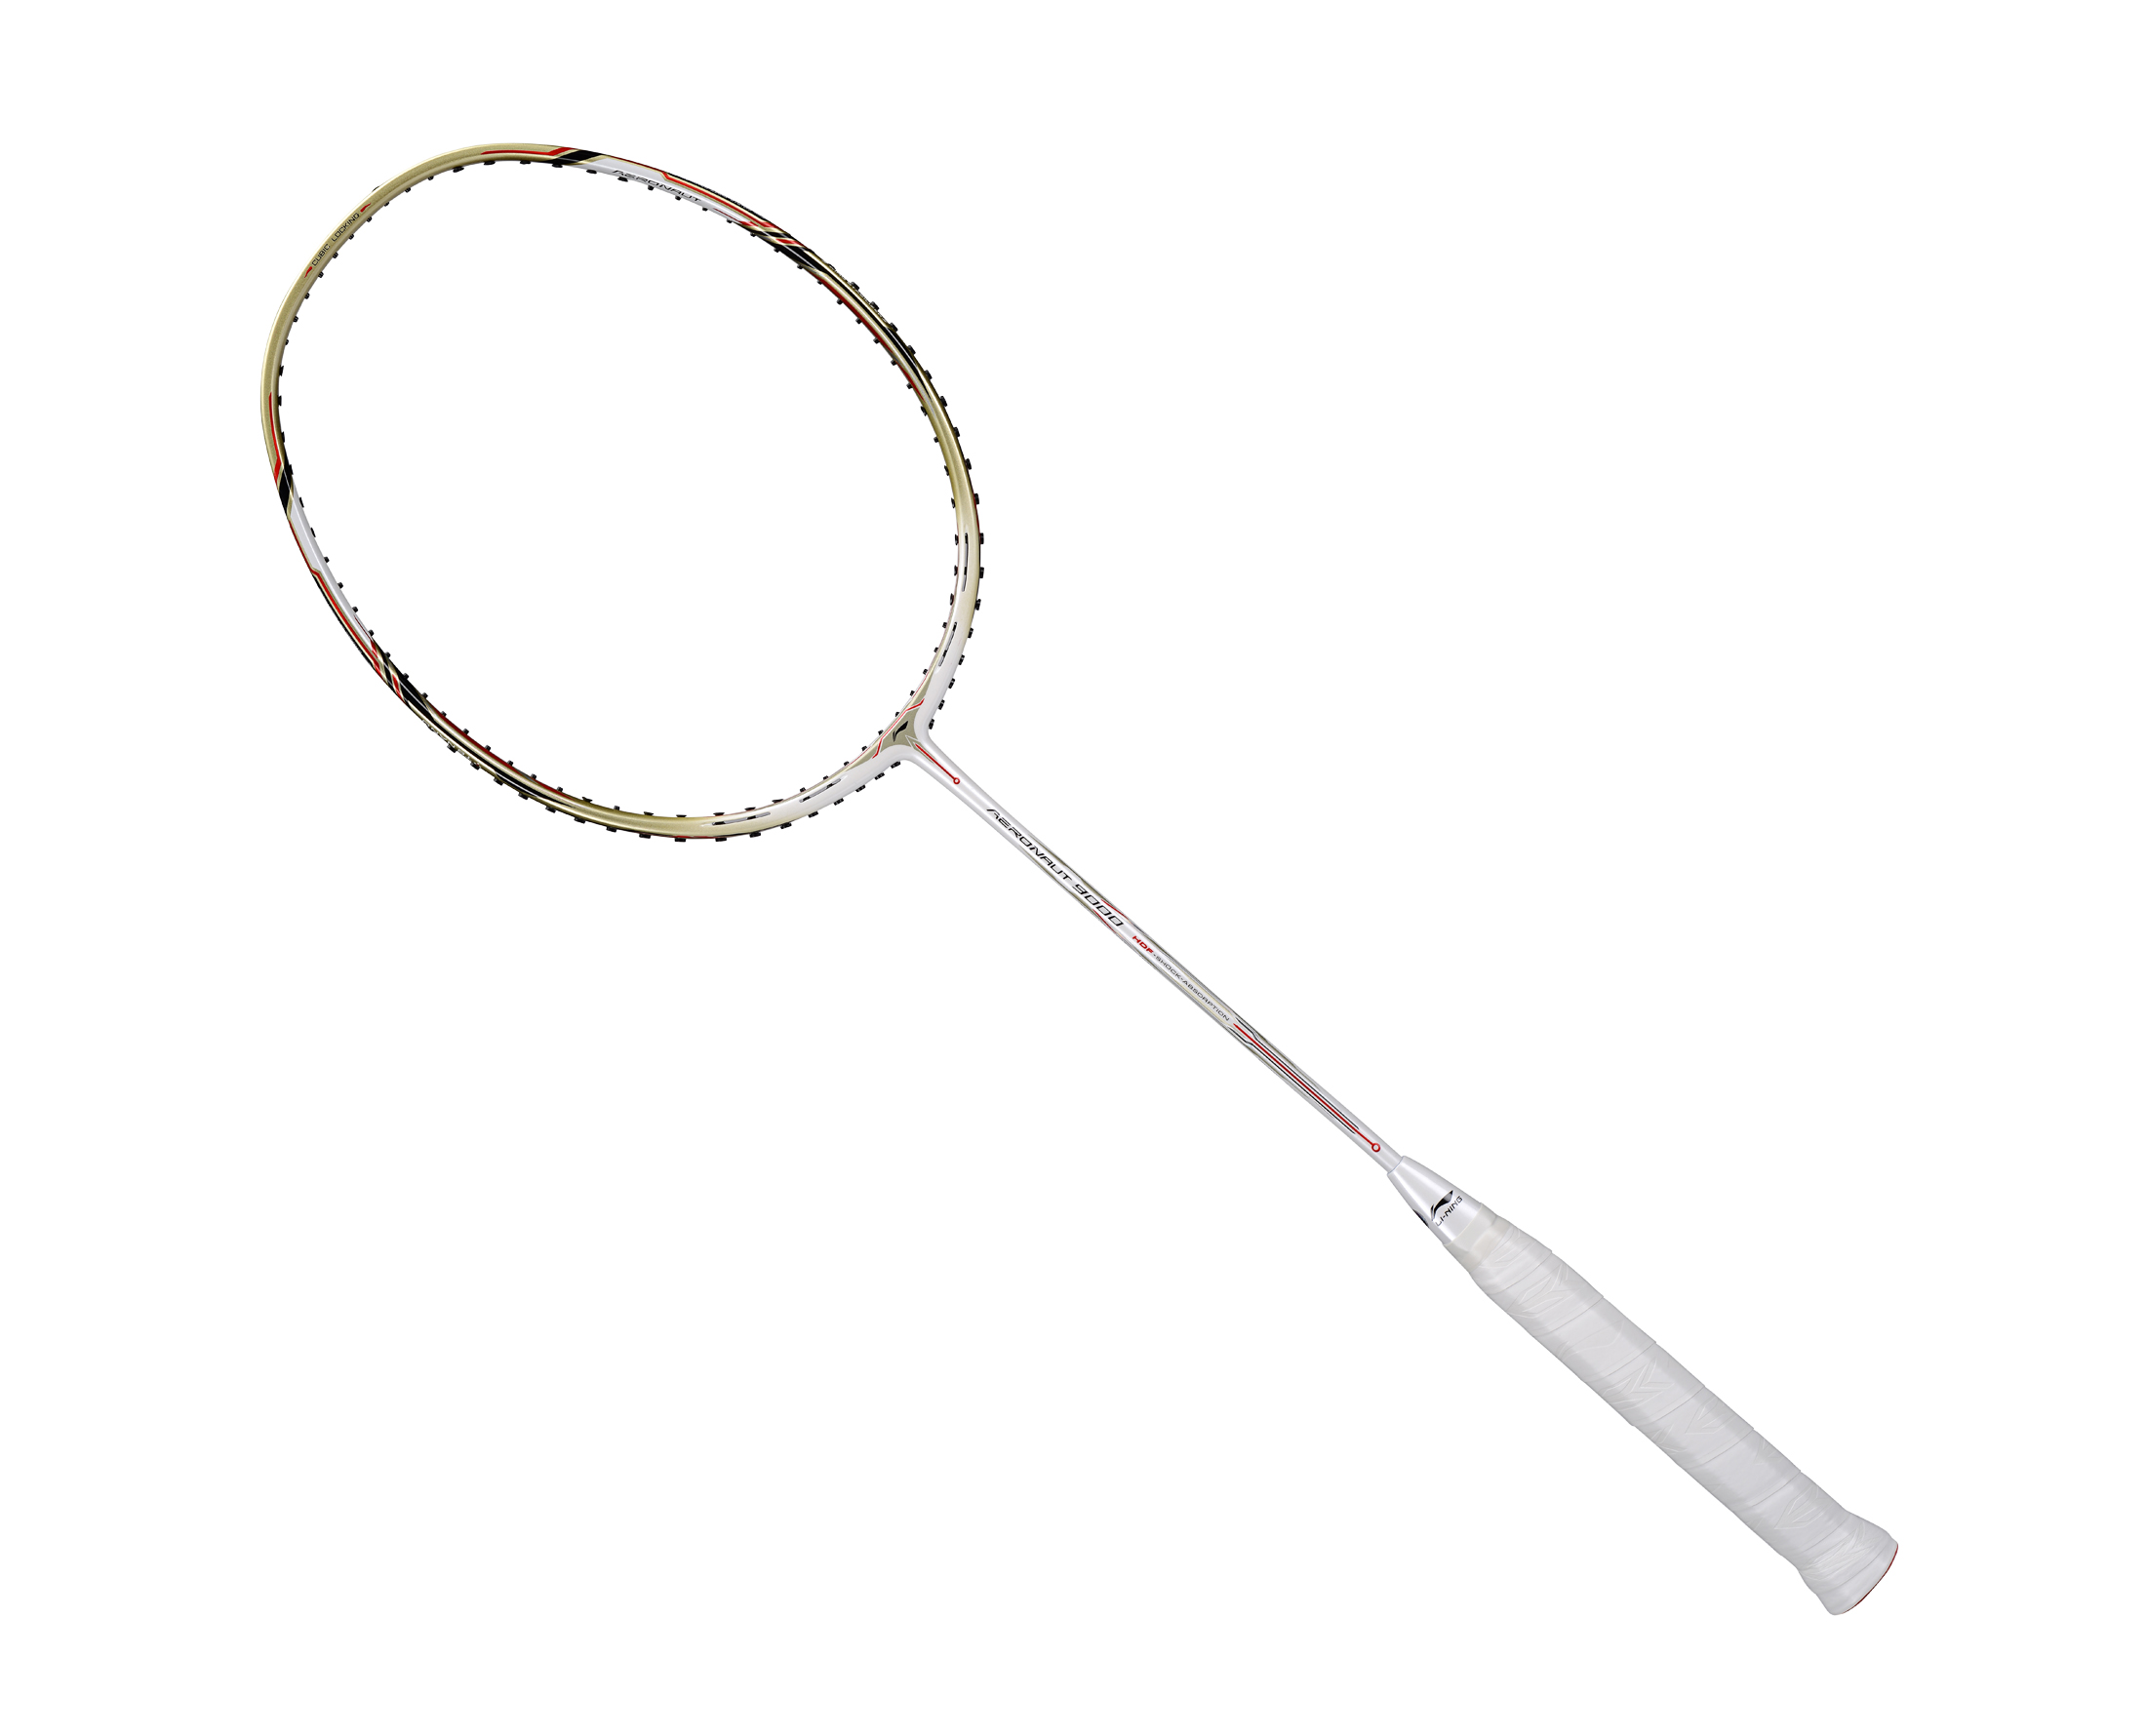 Details about   LI NING AERONAUT 9000 Badminton Racquet carbon fibre Line completion 